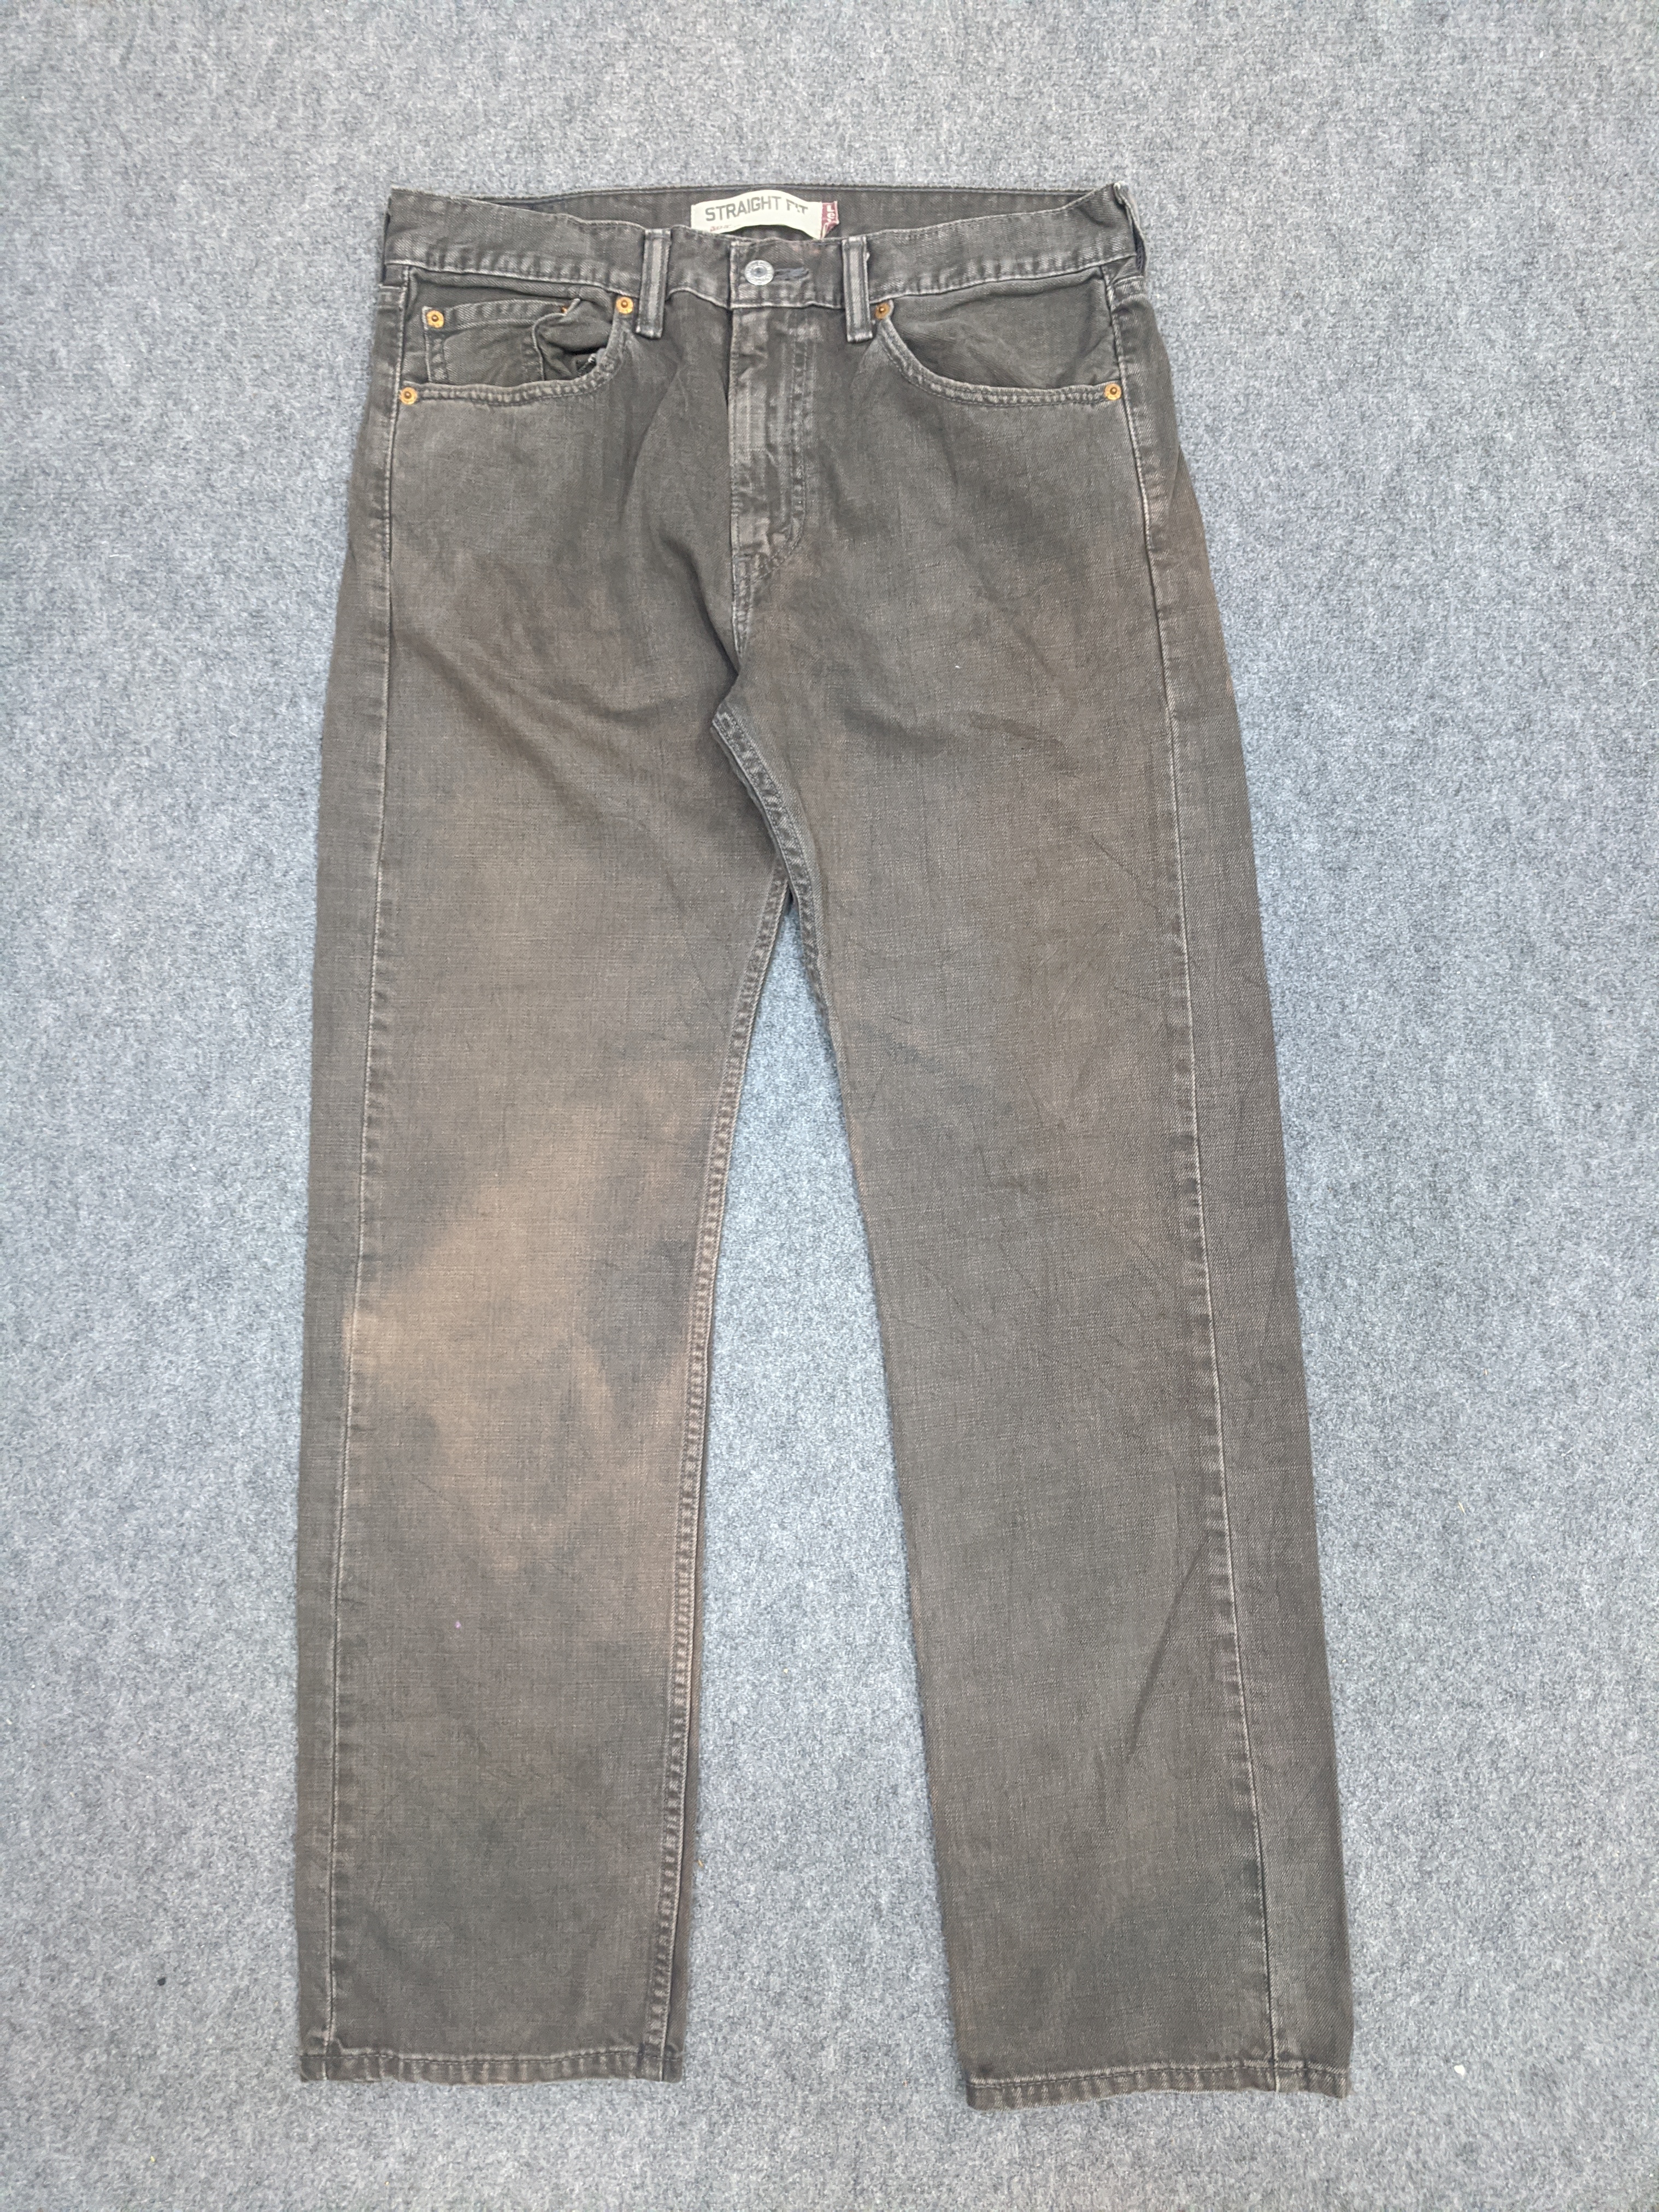 Vintage - Vintage Levis 505 Light Wash Jeans - 1